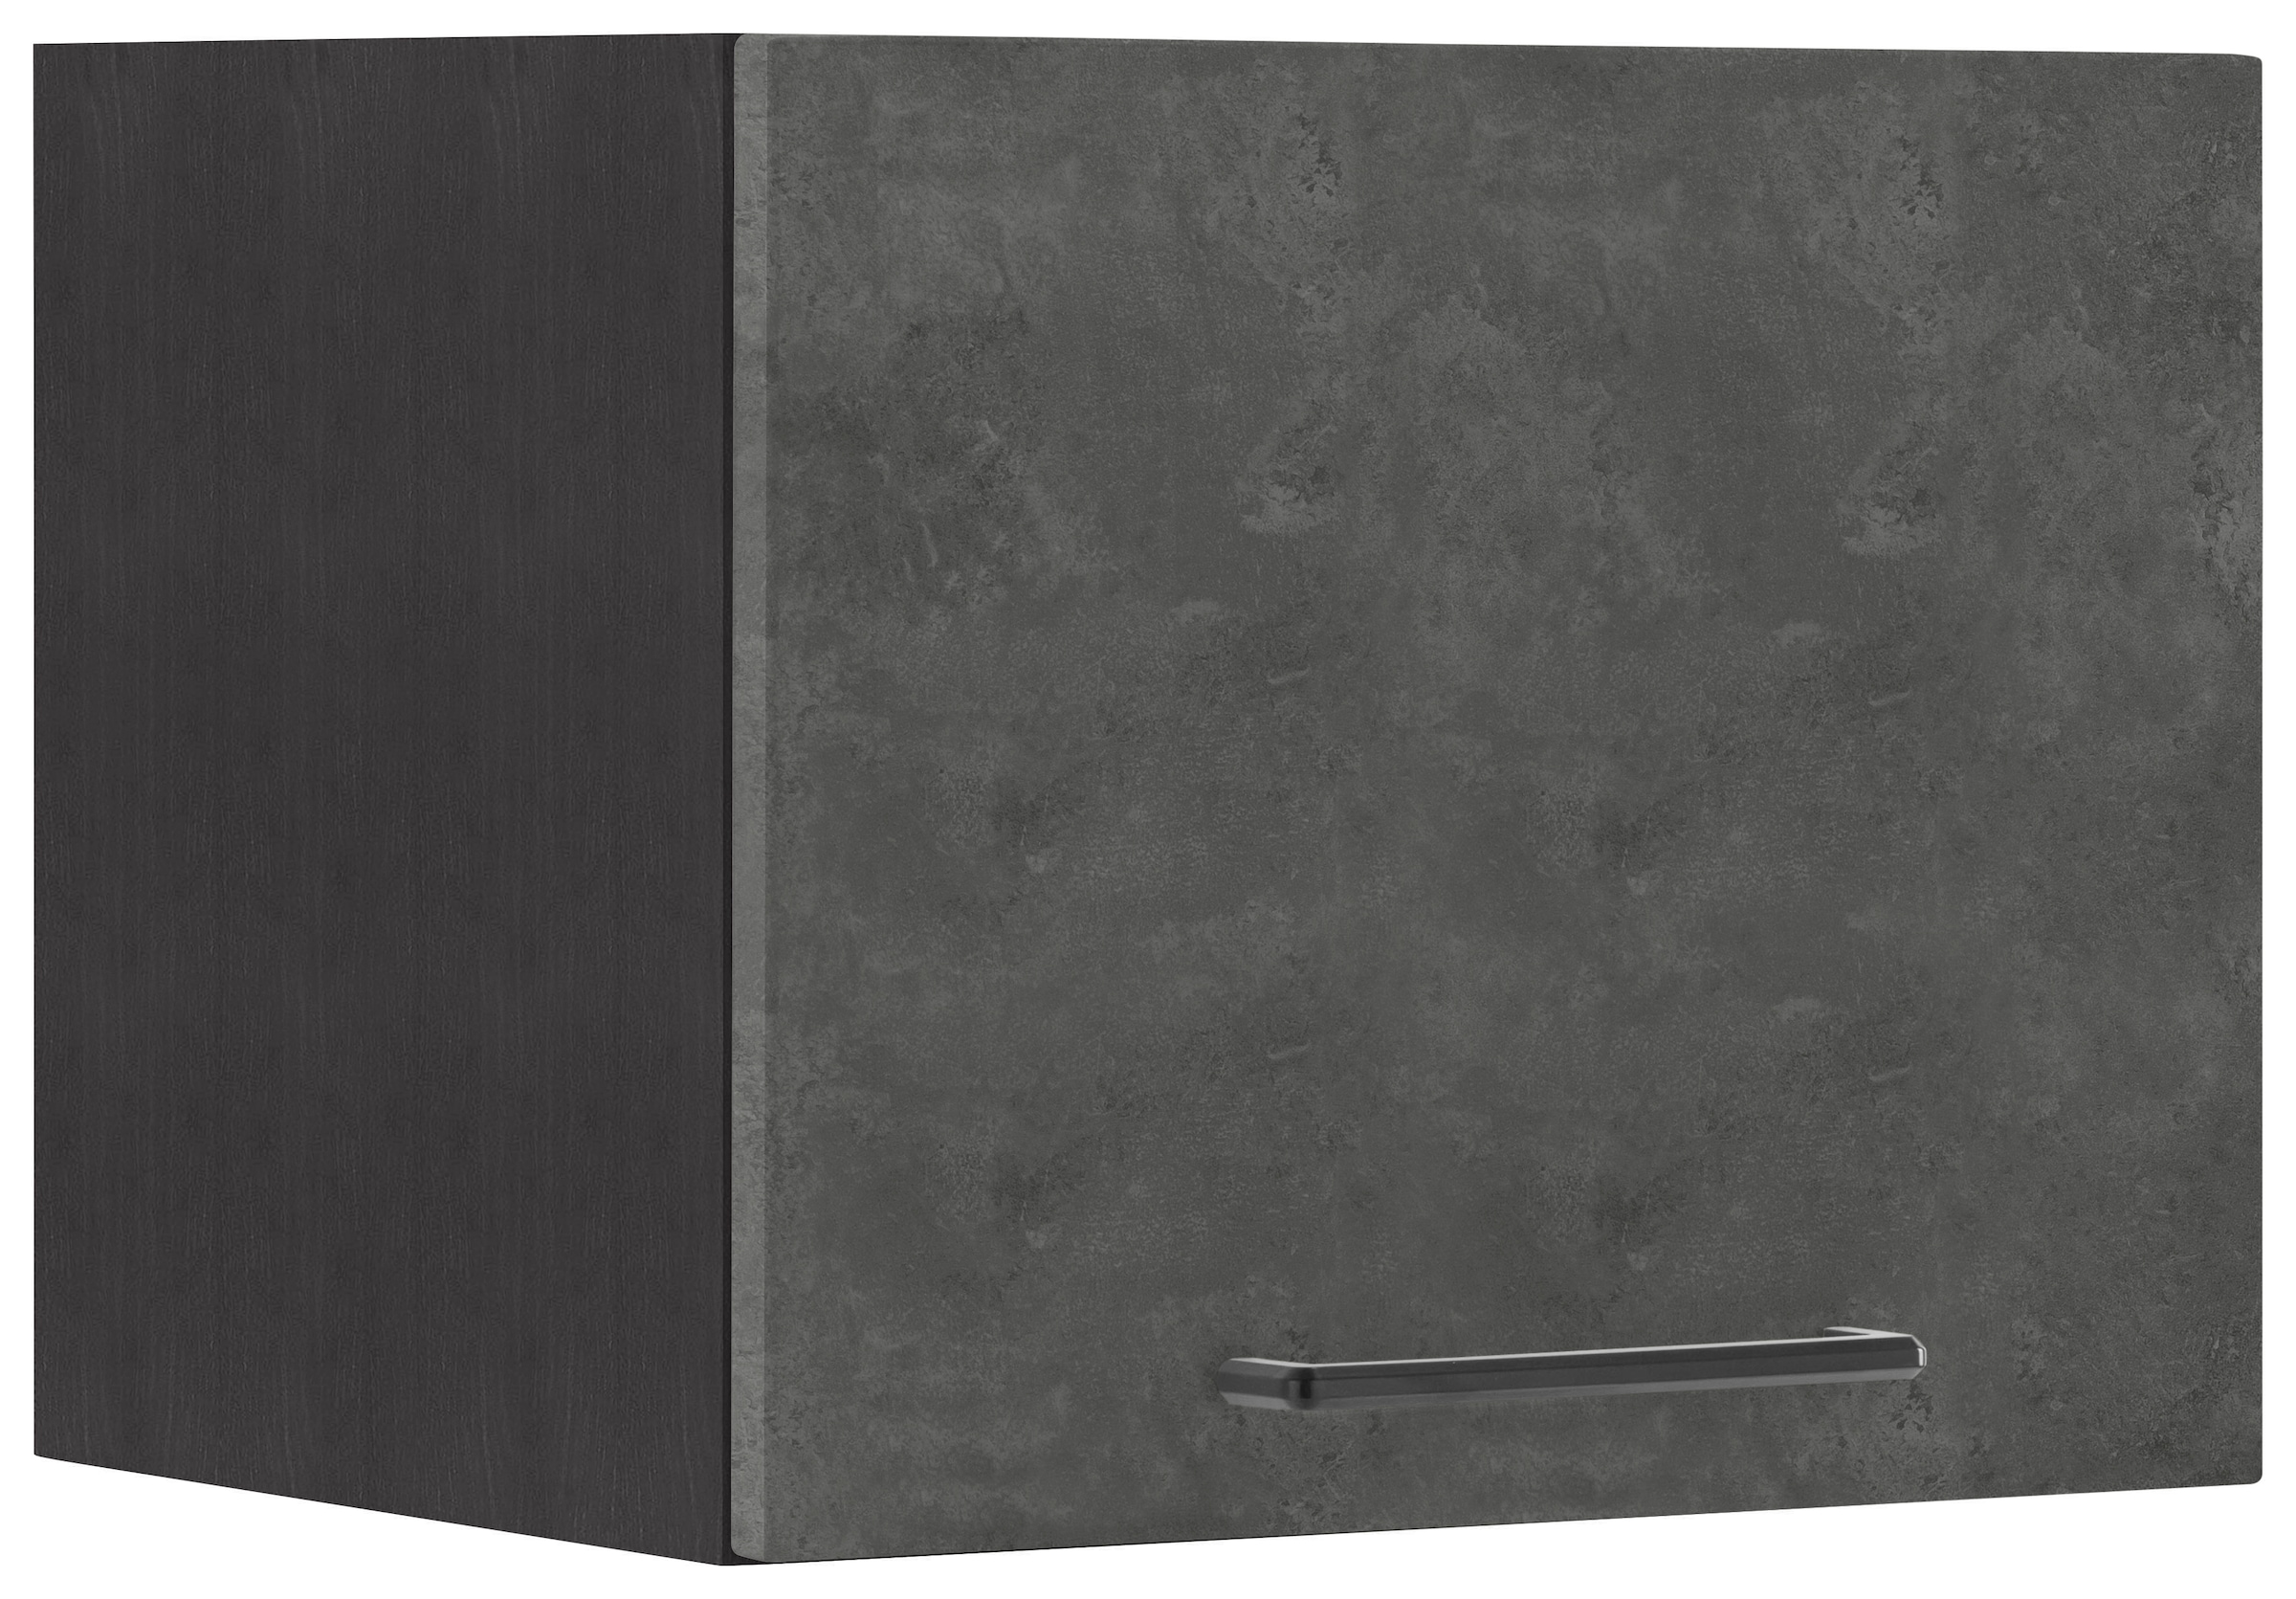 HELD MÖBEL Klapphängeschrank "Tulsa", 40 cm breit, mit 1 Klappe, schwarzer Metallgriff, MDF Front